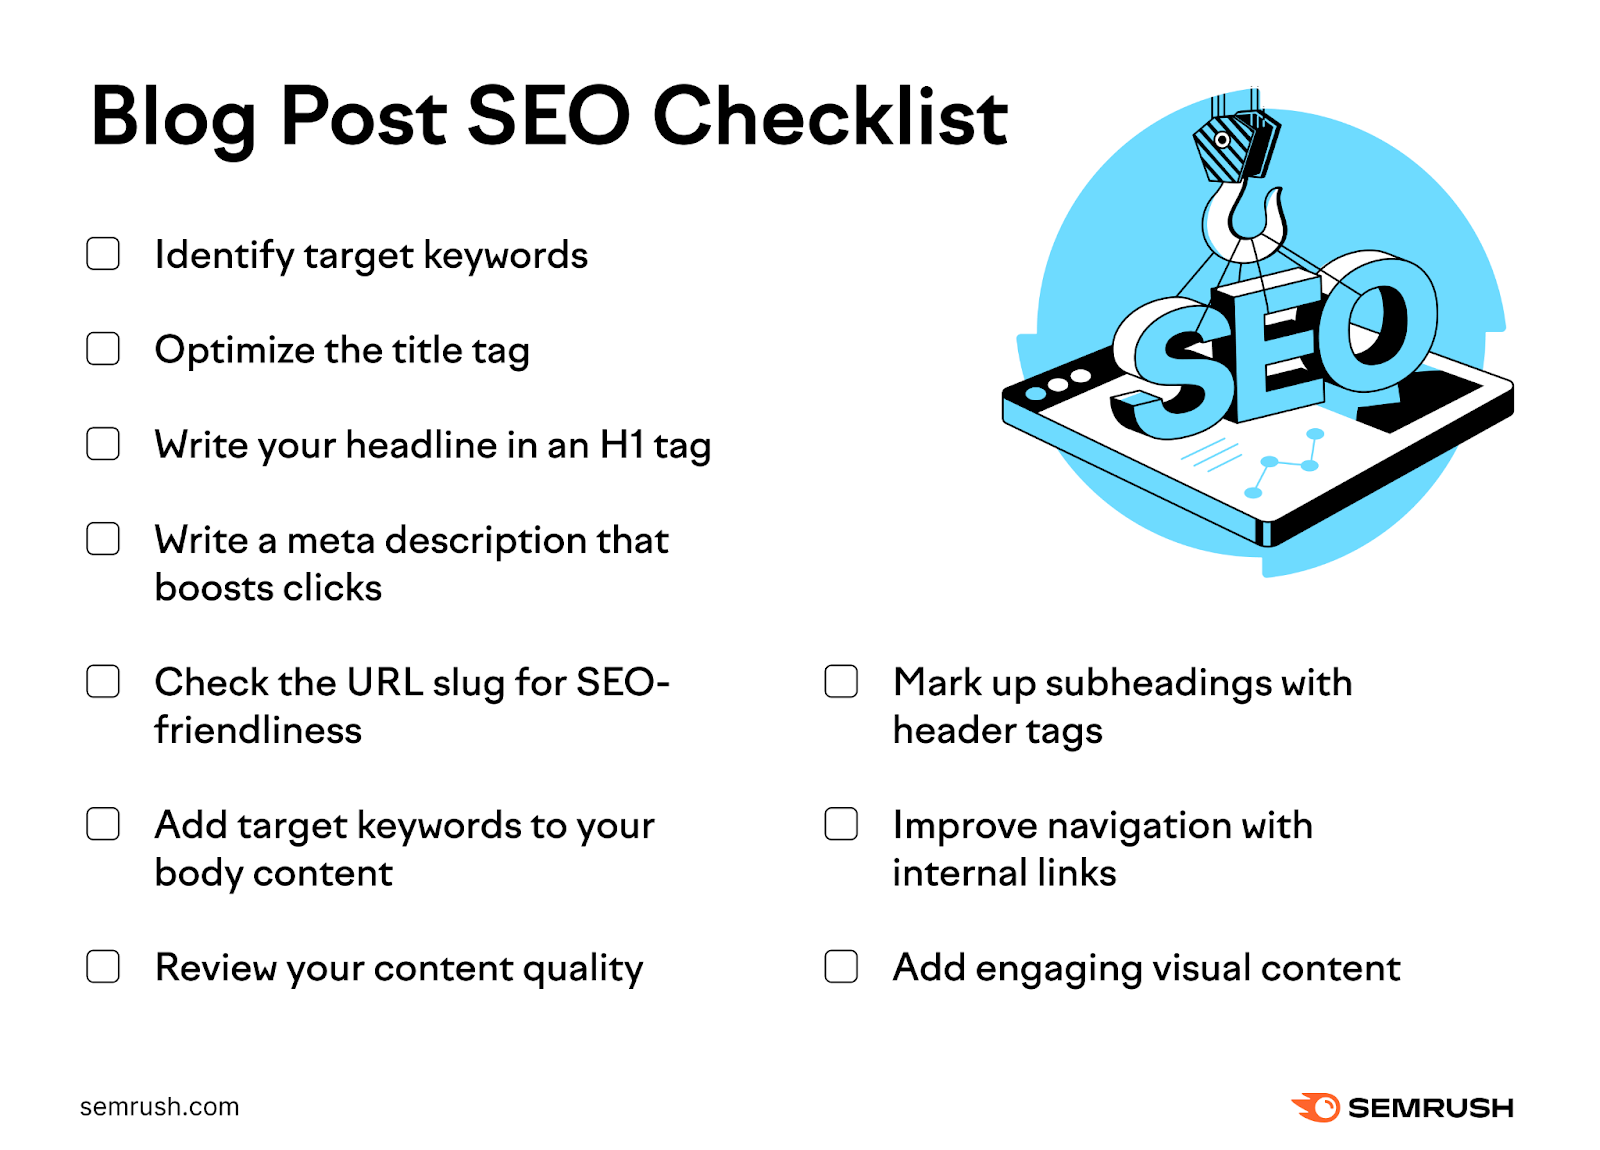 Blog station  SEO checklist by Semrush